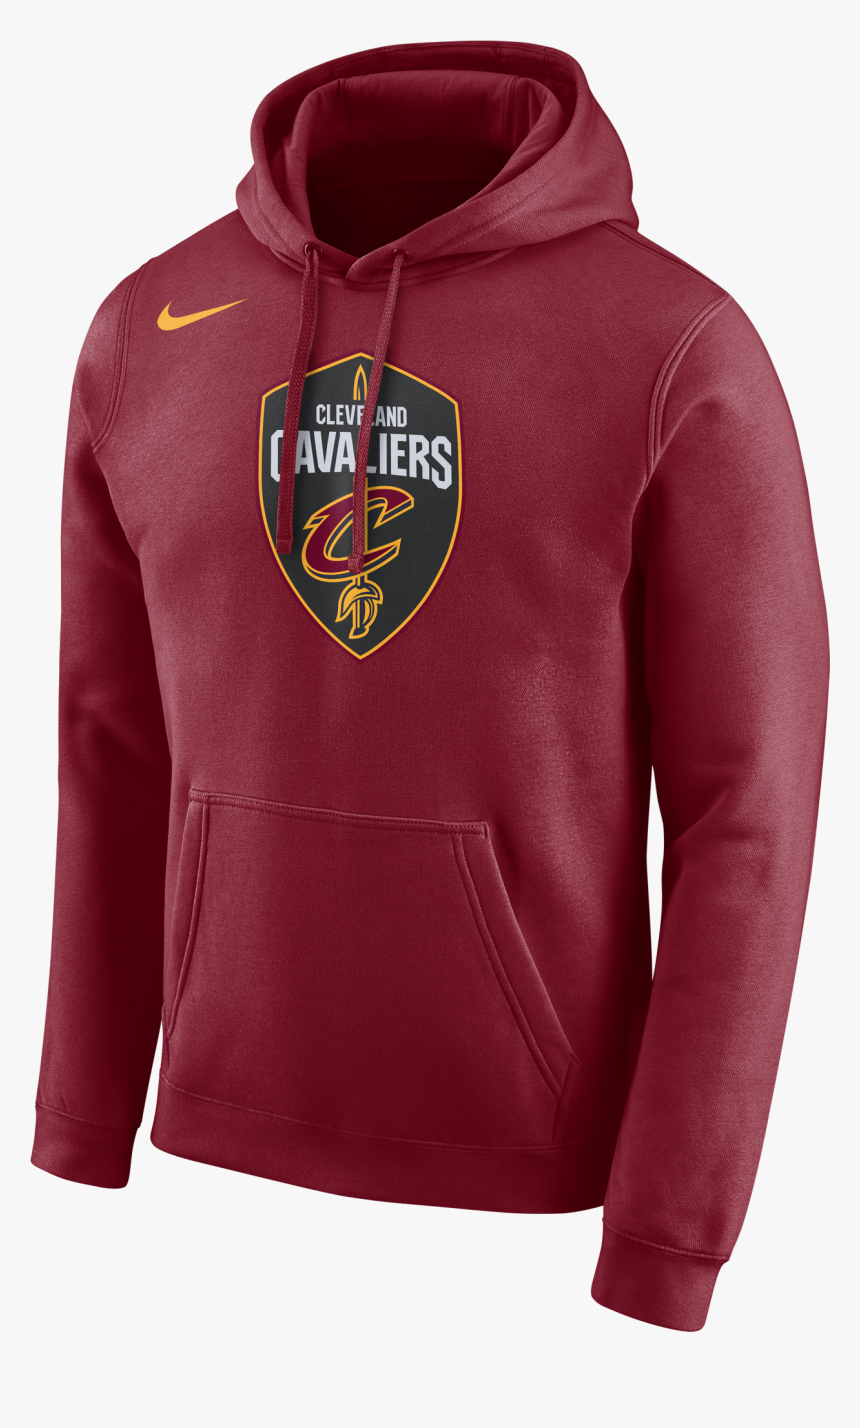 Nike Nba Cleveland Cavaliers Logo Hoodie - Brooklyn Nets Nike Hoodie, HD Png Download, Free Download